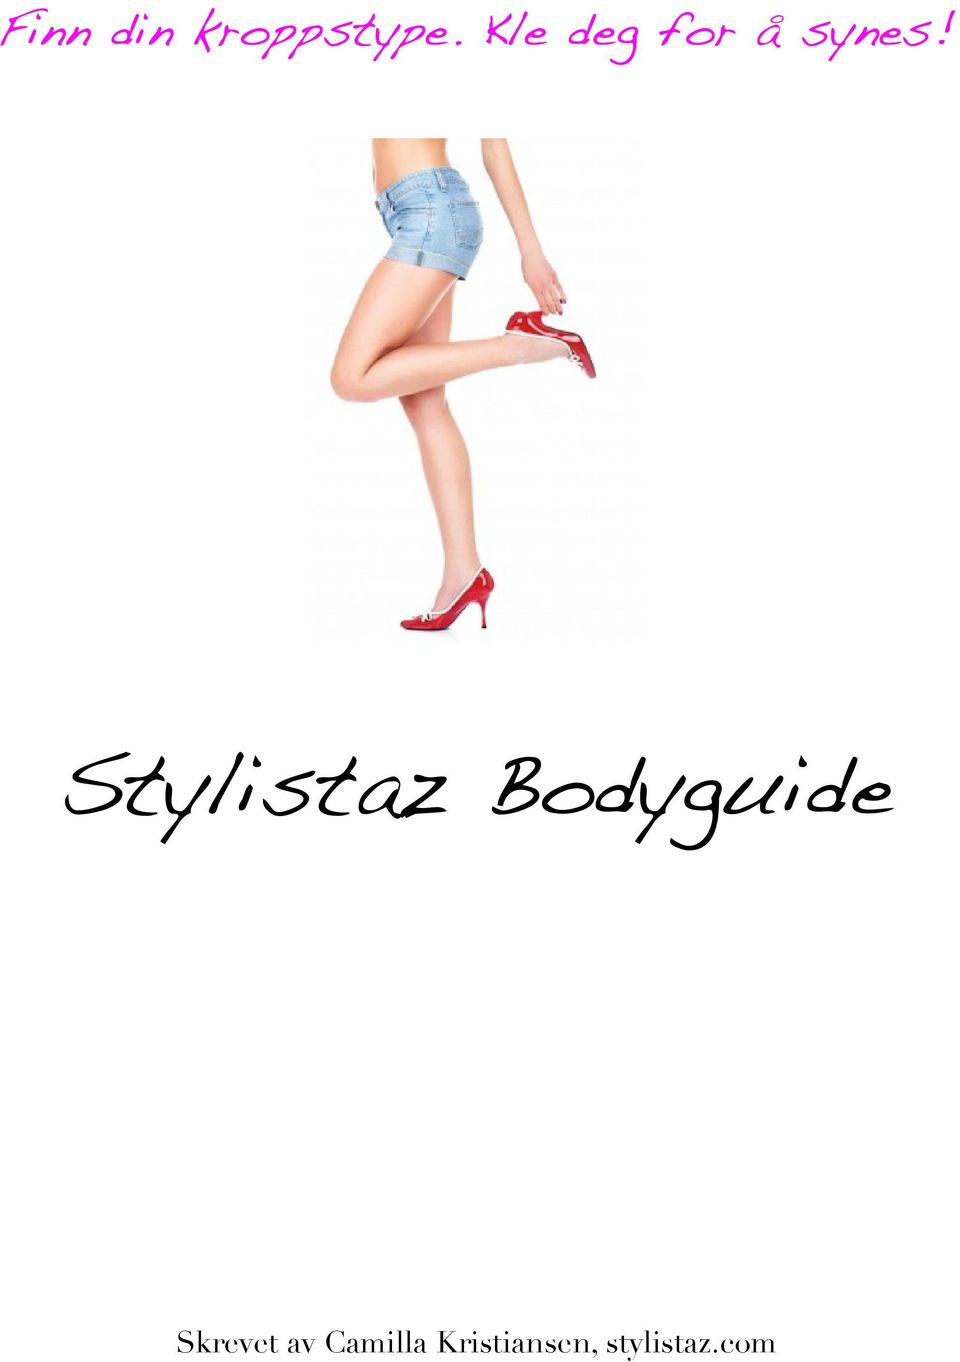 Stylistaz Bodyguide